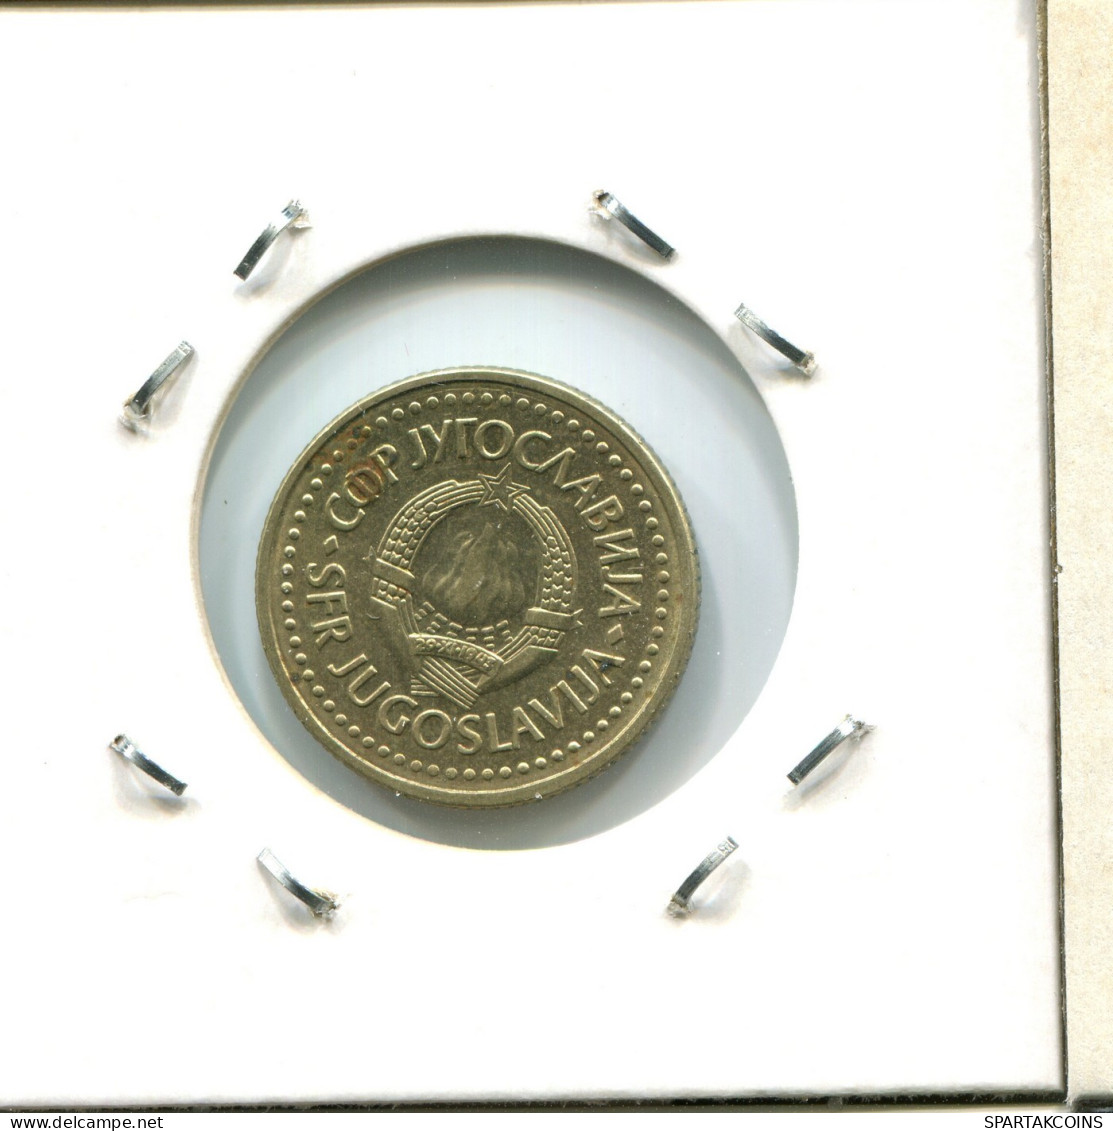 1 DINAR 1982 YUGOSLAVIA Coin #AW830.U.A - Joegoslavië